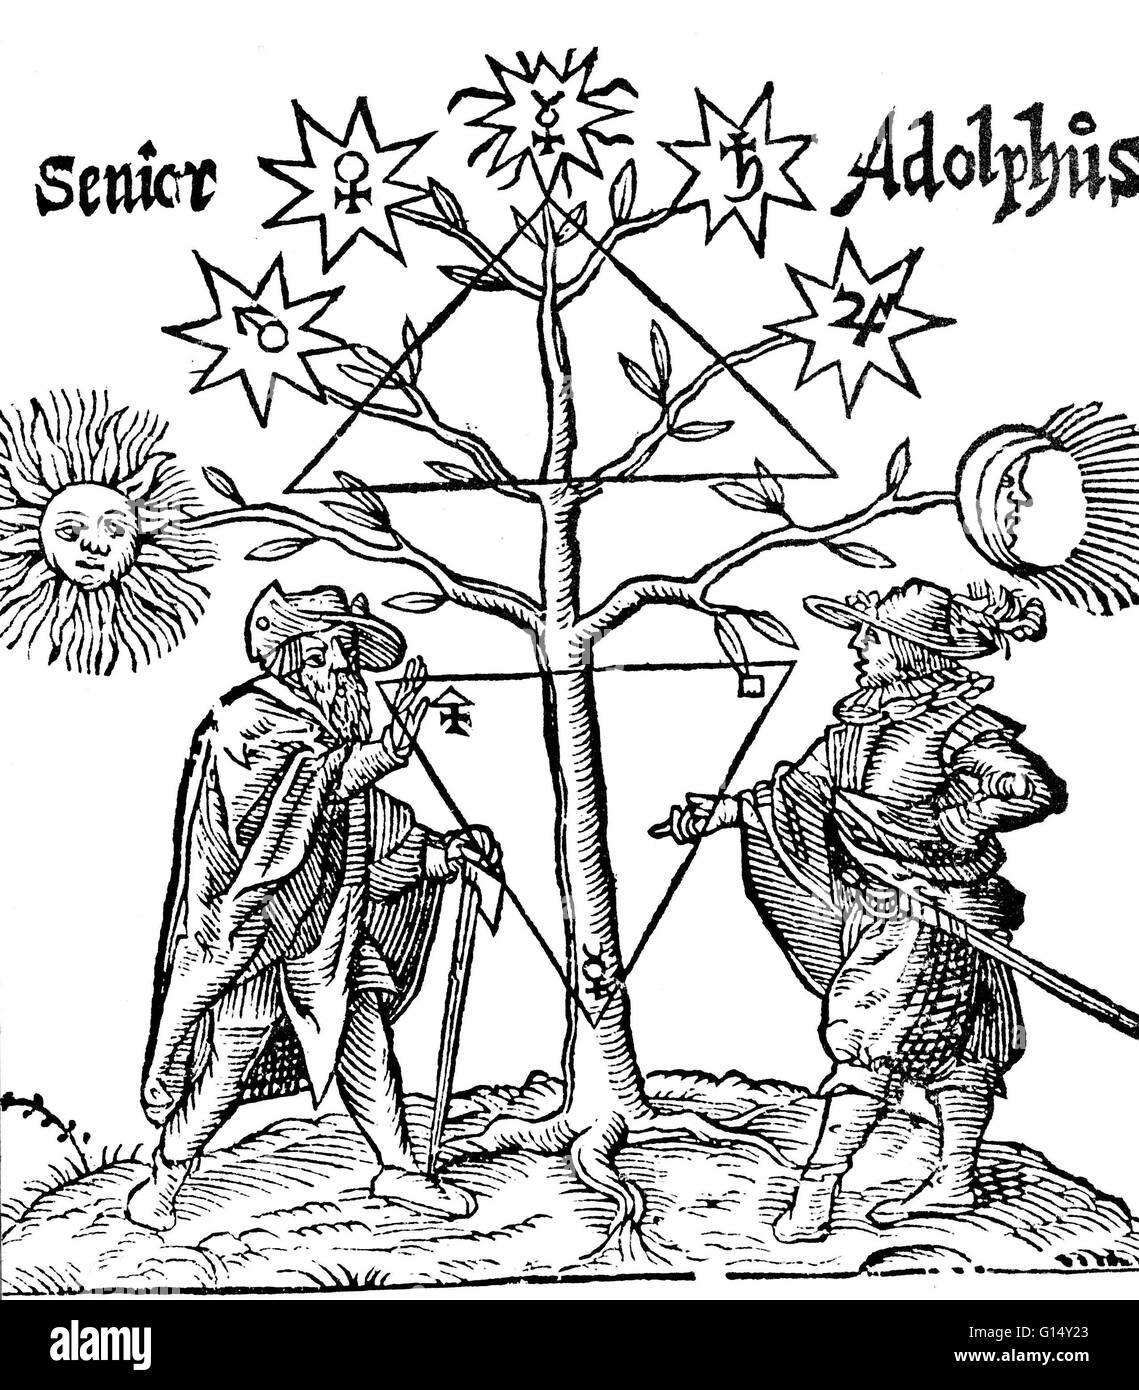 Der himmlische Baum, aus einem Werk lange zugeschrieben Basil Valentine, ein 15. Jahrhundert Mönch, dessen Existenz nun angezweifelt wird. Die astrologischen Symbole zeigen die mystische Natur der Alchemie. Alchemie war die pseudo-wissenschaftliche Vorläufer der Chemie. Unter o Stockfoto